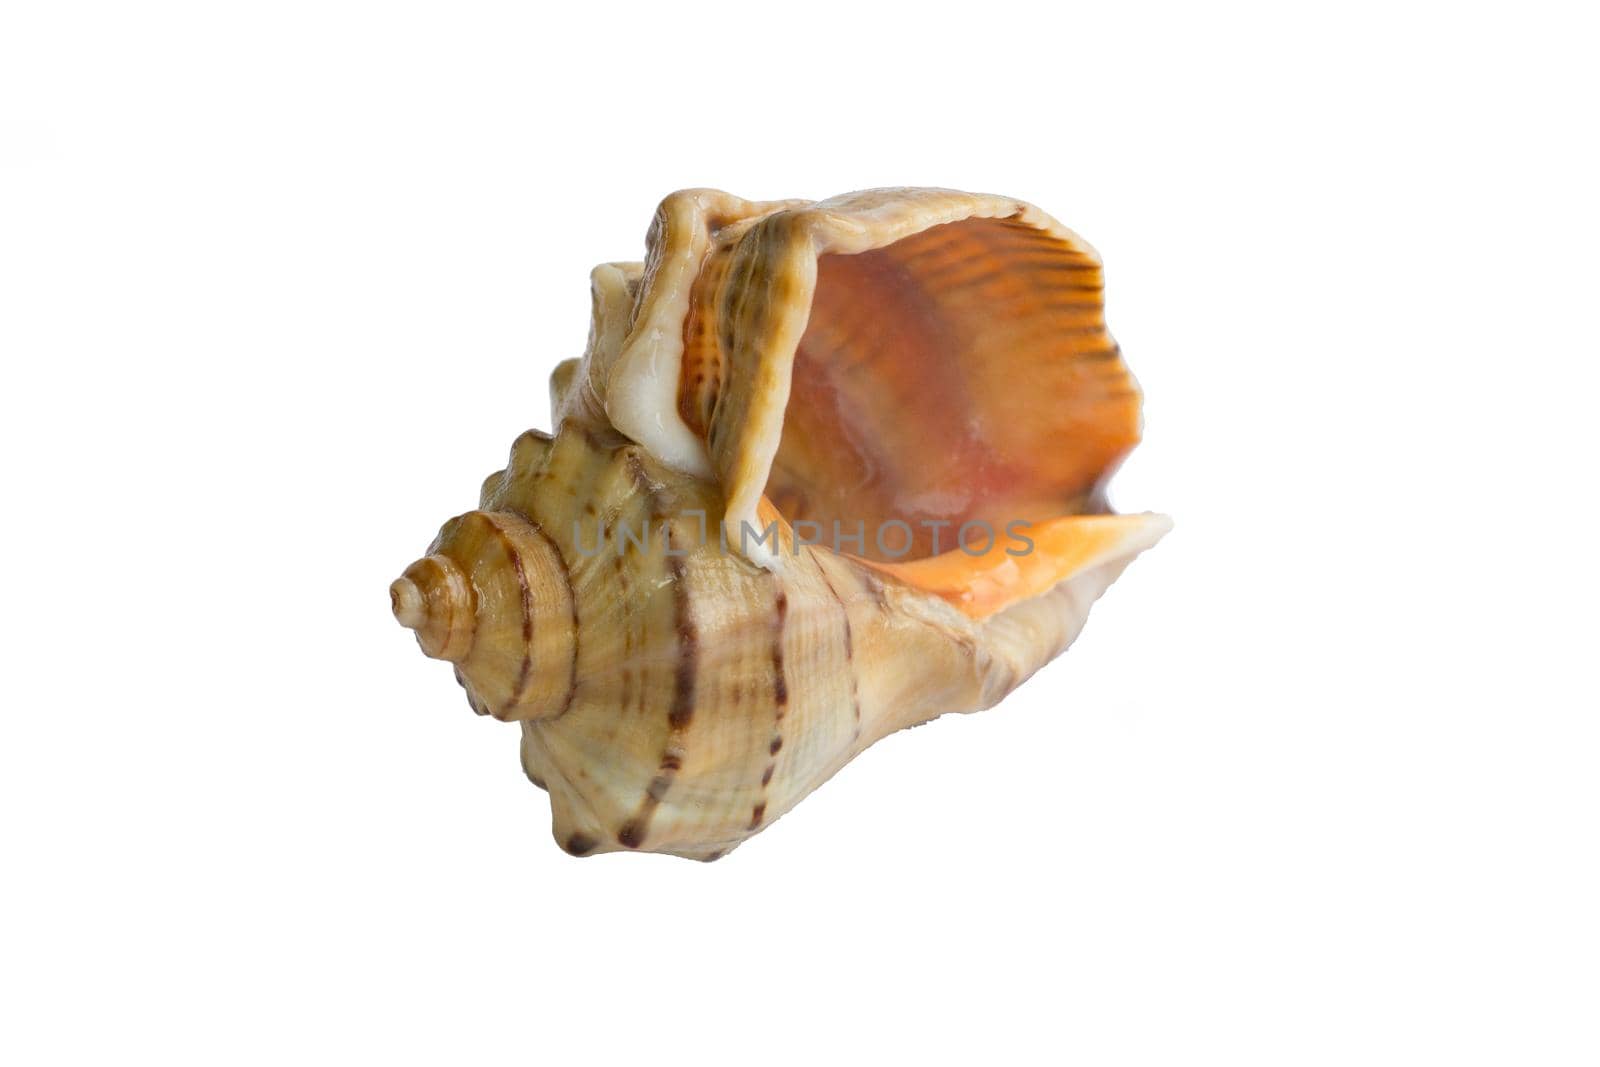 Marine life: big light bright yellow orange gastropod seashell close-up on white background